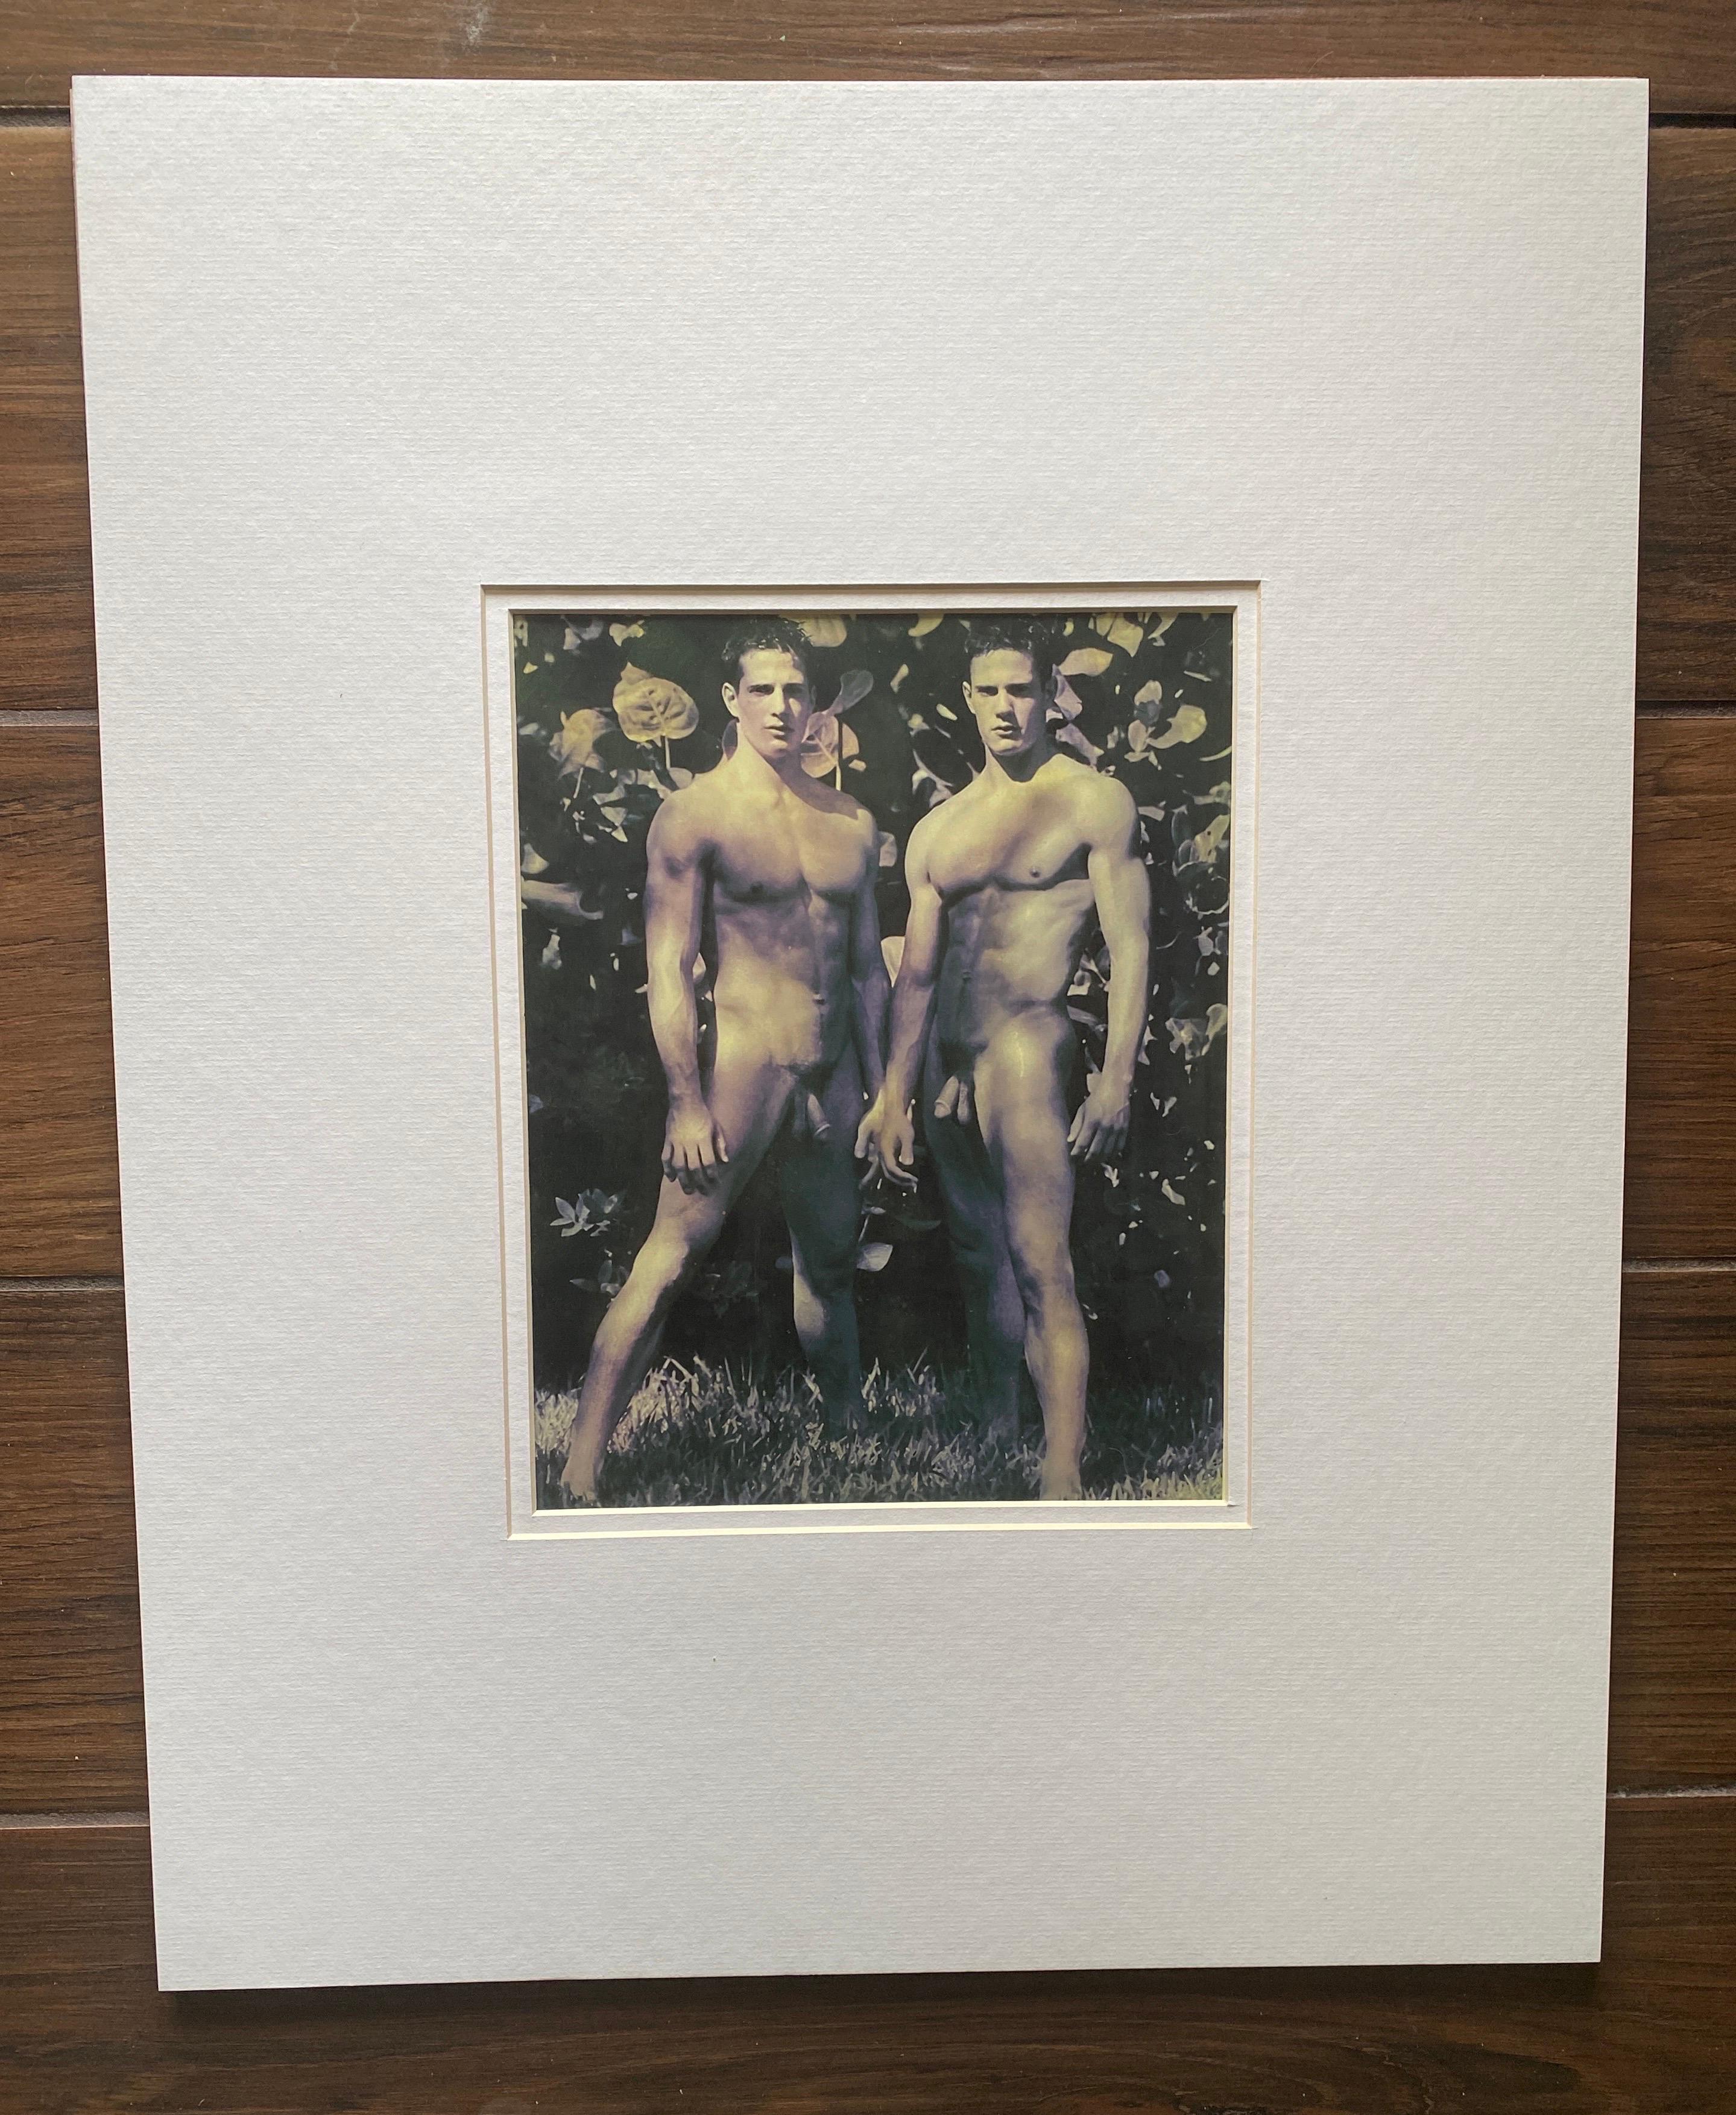 Nous vendons 4 images des jumeaux Carlson, Lane et Kyle. Ce que l'on sait : la série de nus a été réalisée par Bruce Weber en 2000. Elles sont intitulées 